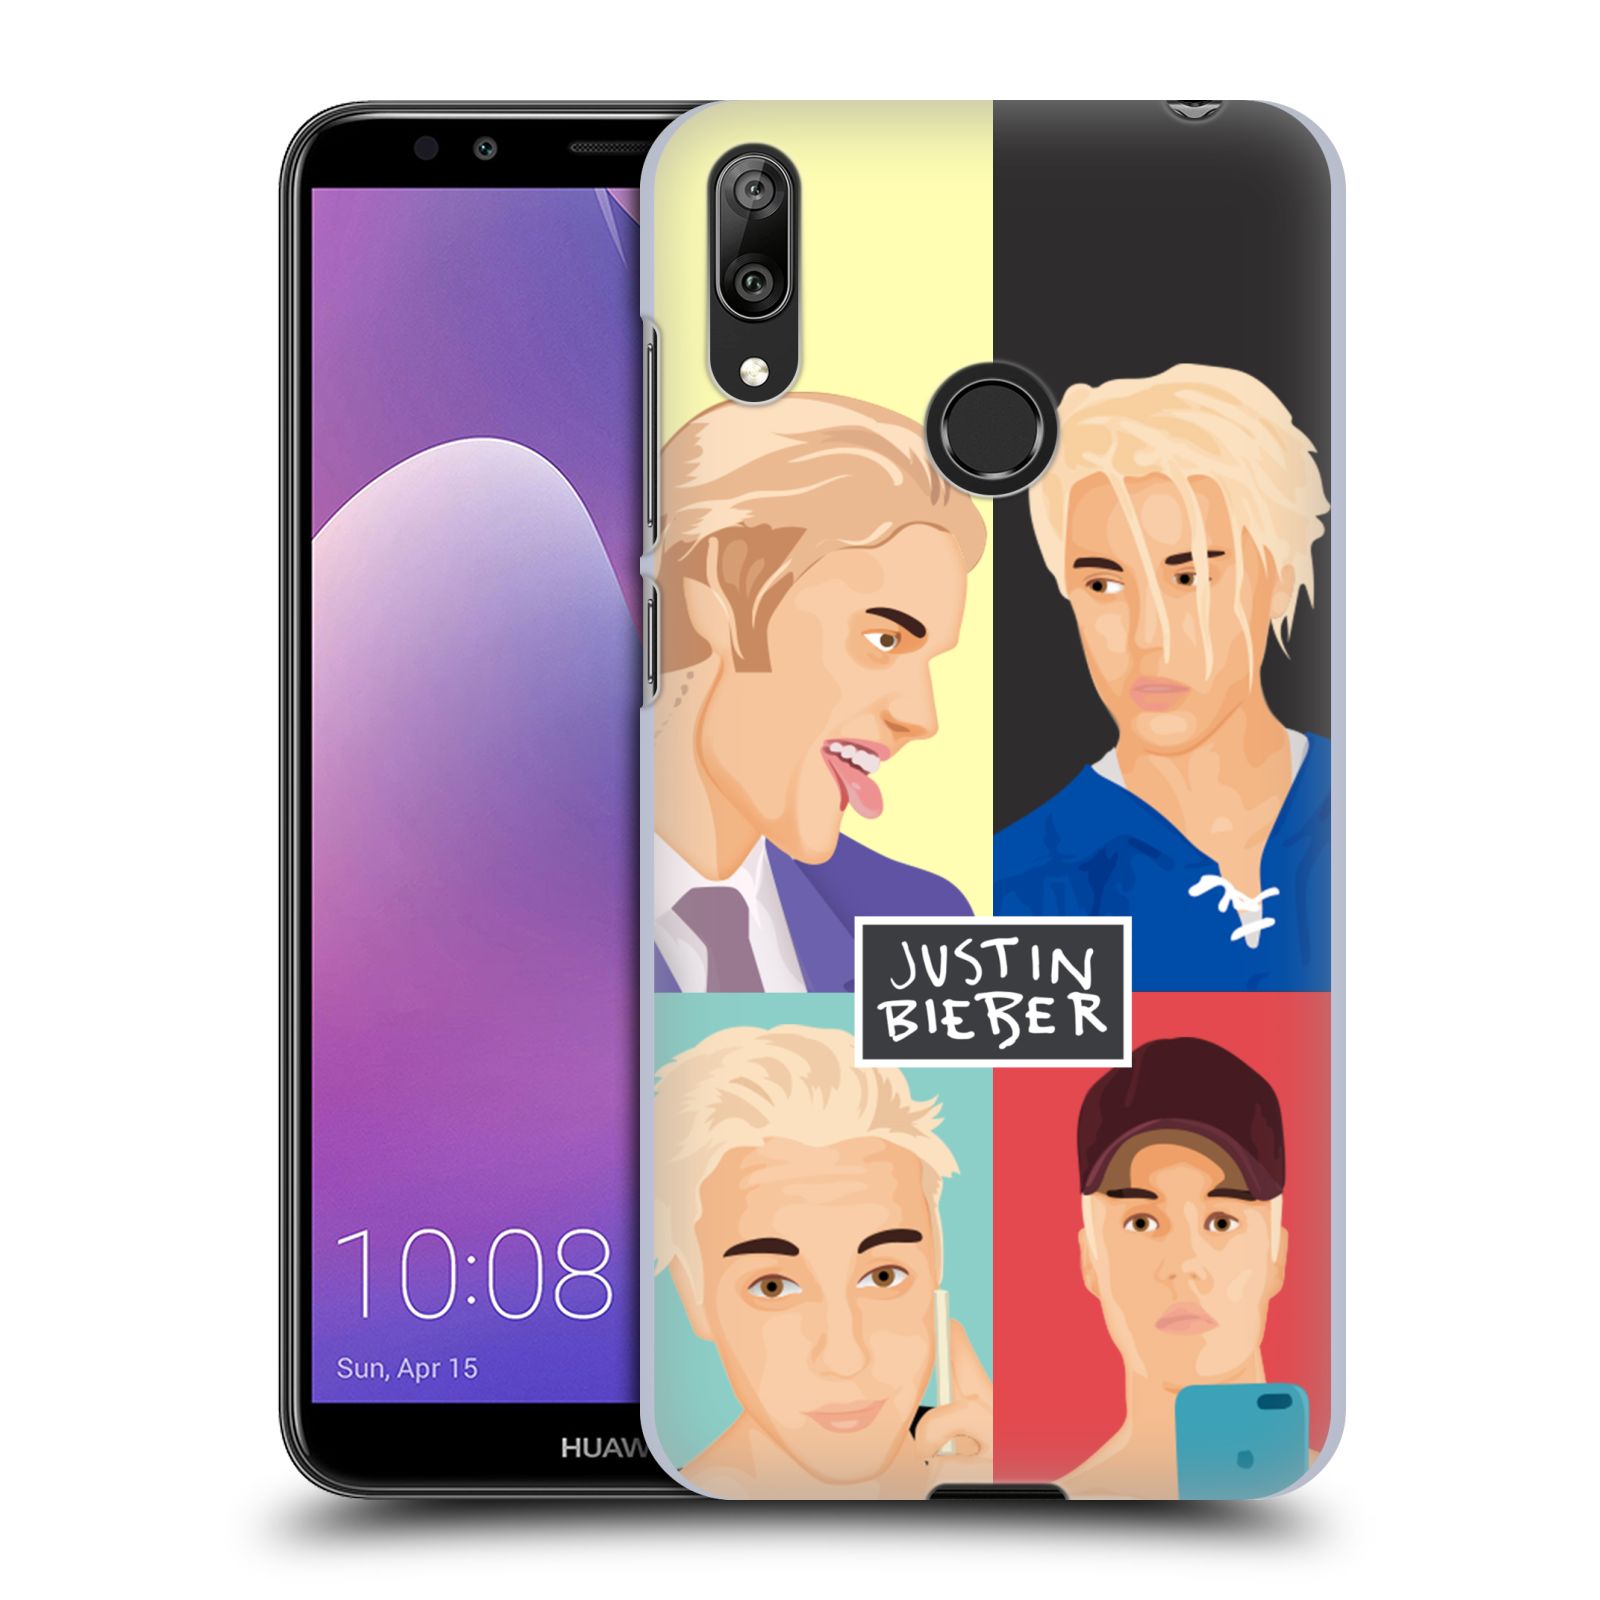 Pouzdro na mobil Huawei Y7 2019 - Head Case - Justin Bieber kreslená tvář 4 tváře